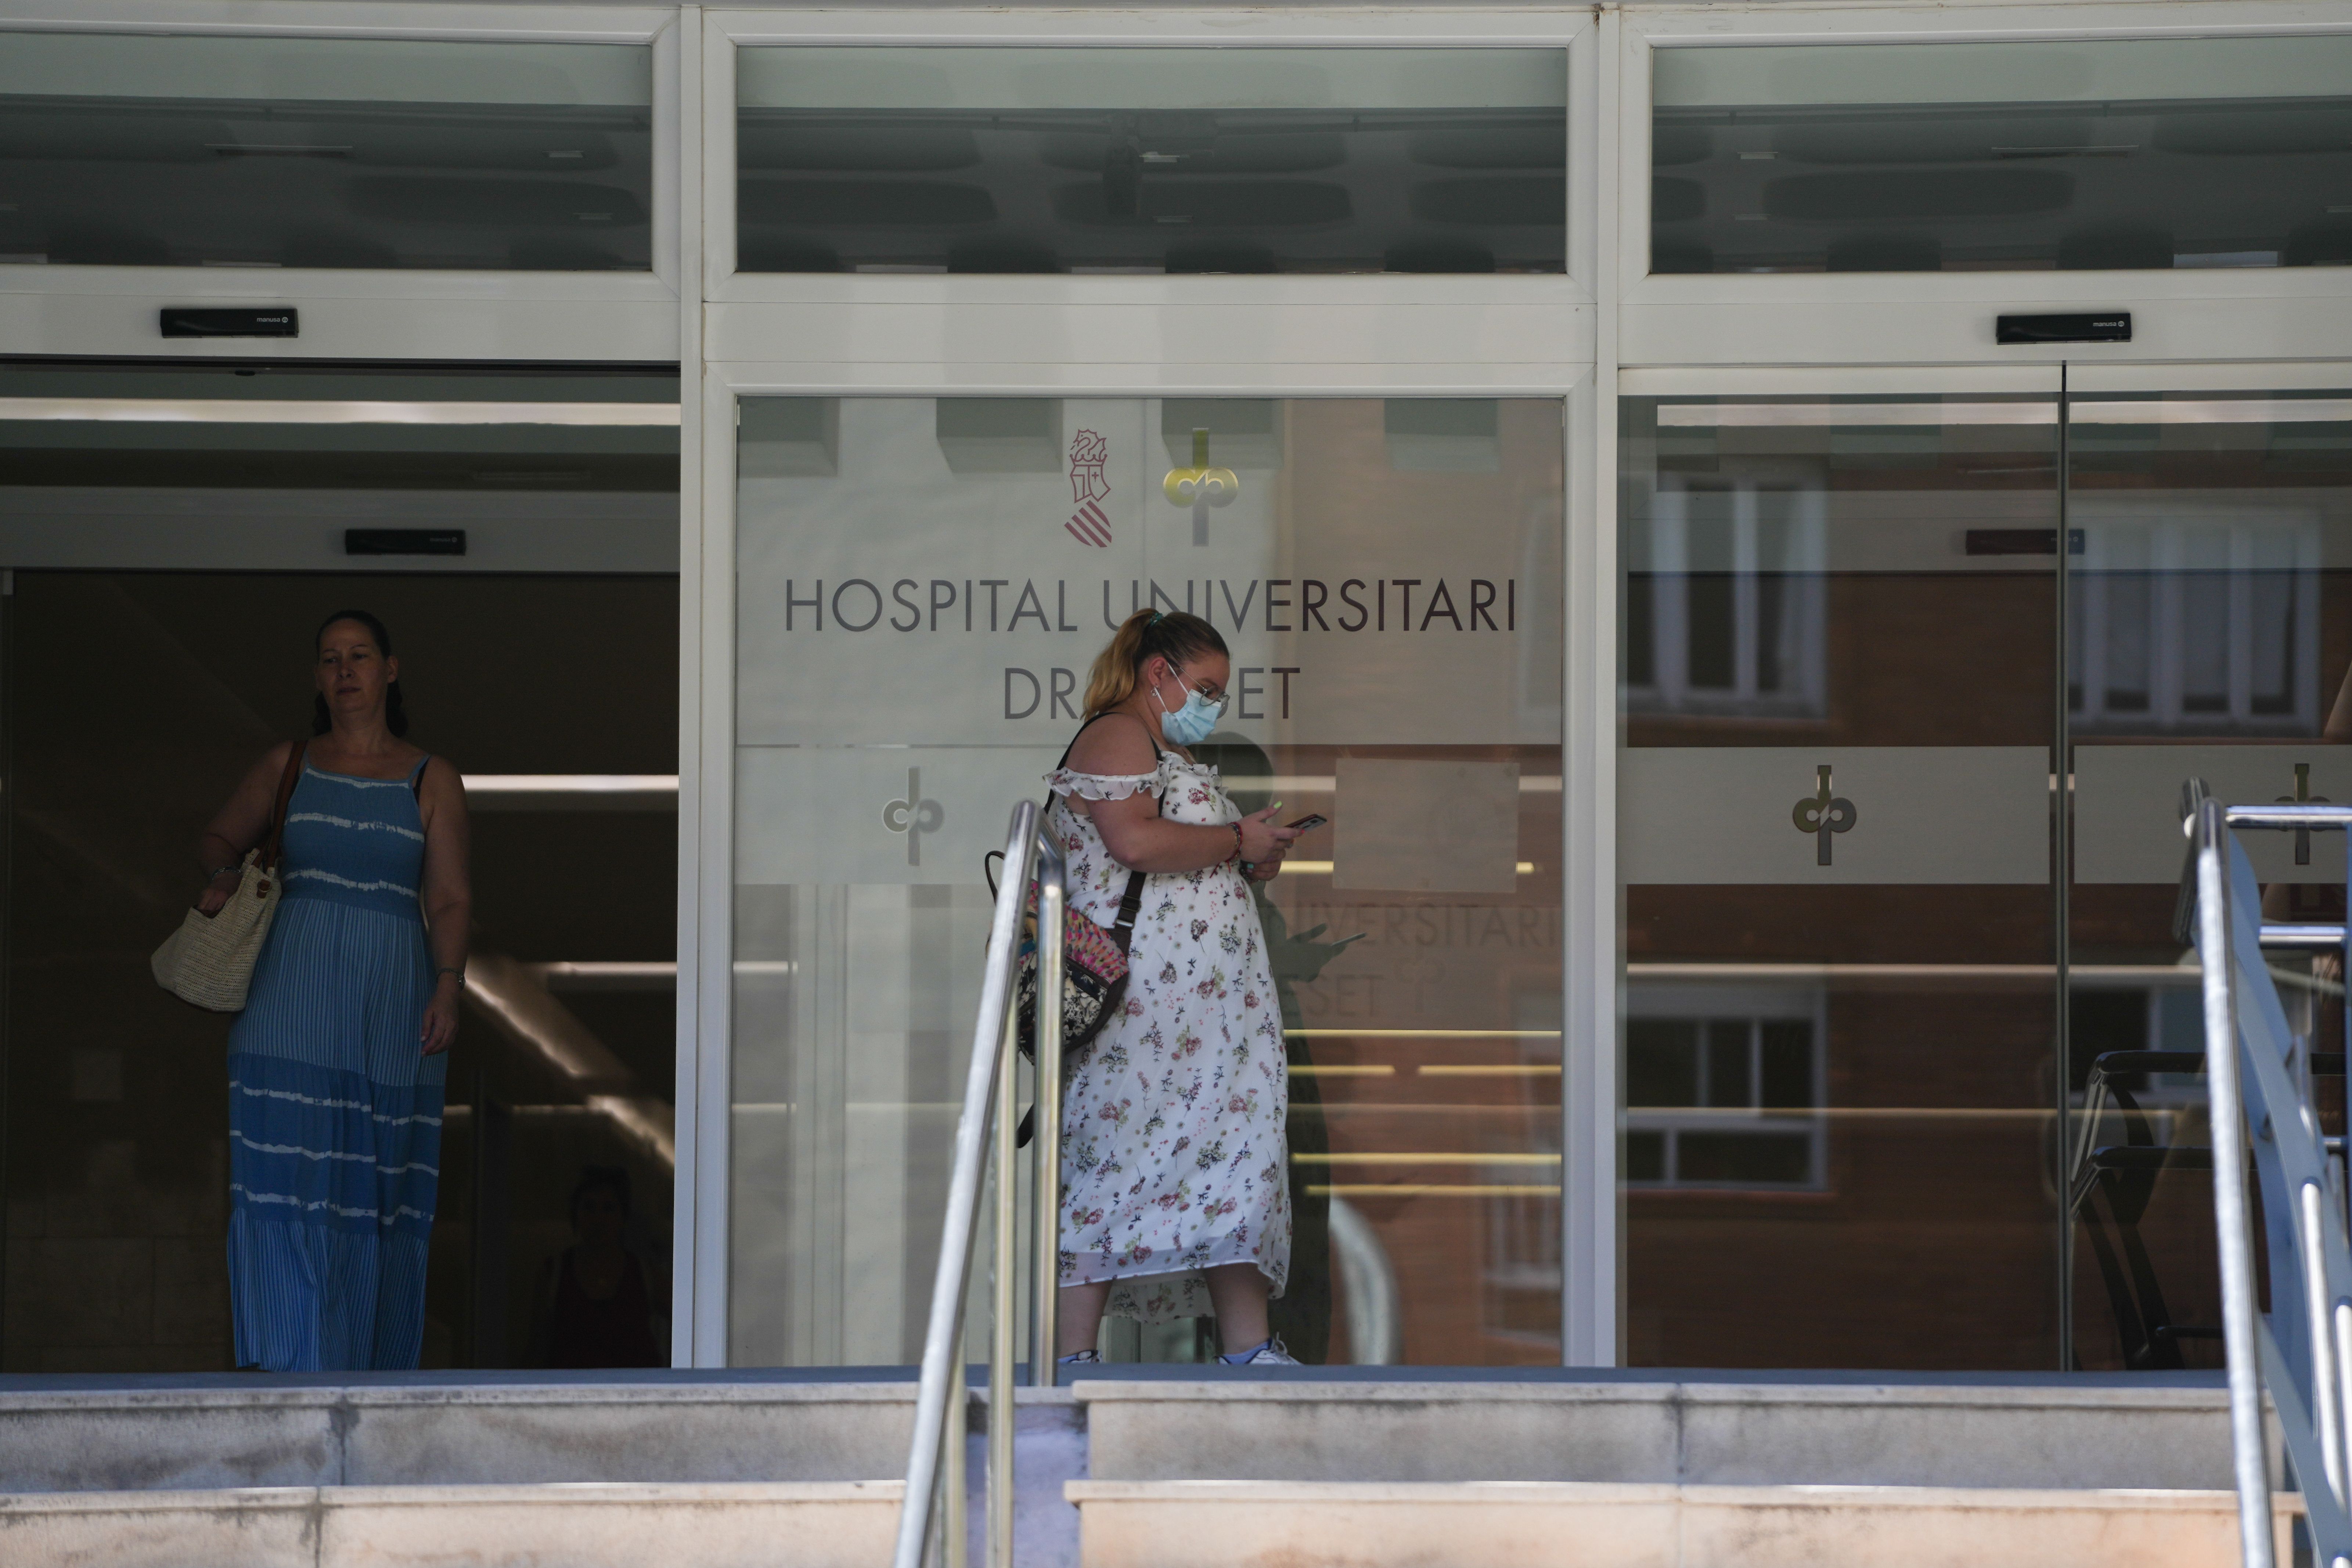 Vuelve el fantasma de las mascarillas a los hospitales: ¿serán obligatorias de nuevo?